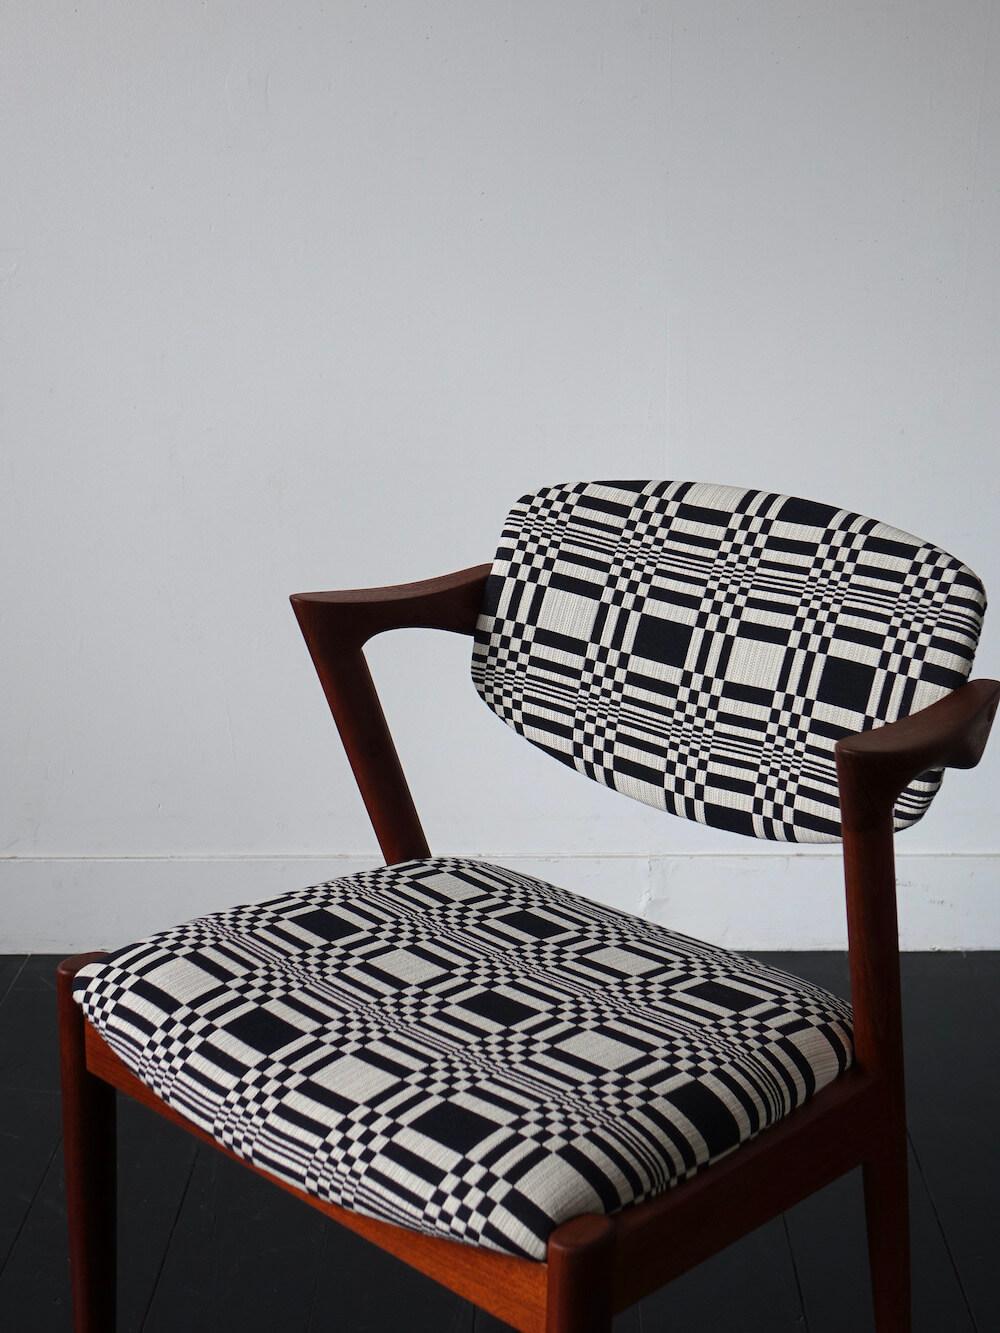 Dining chair “No.42” by Kai Kristiansen with Johanna Gullichsen / Doris